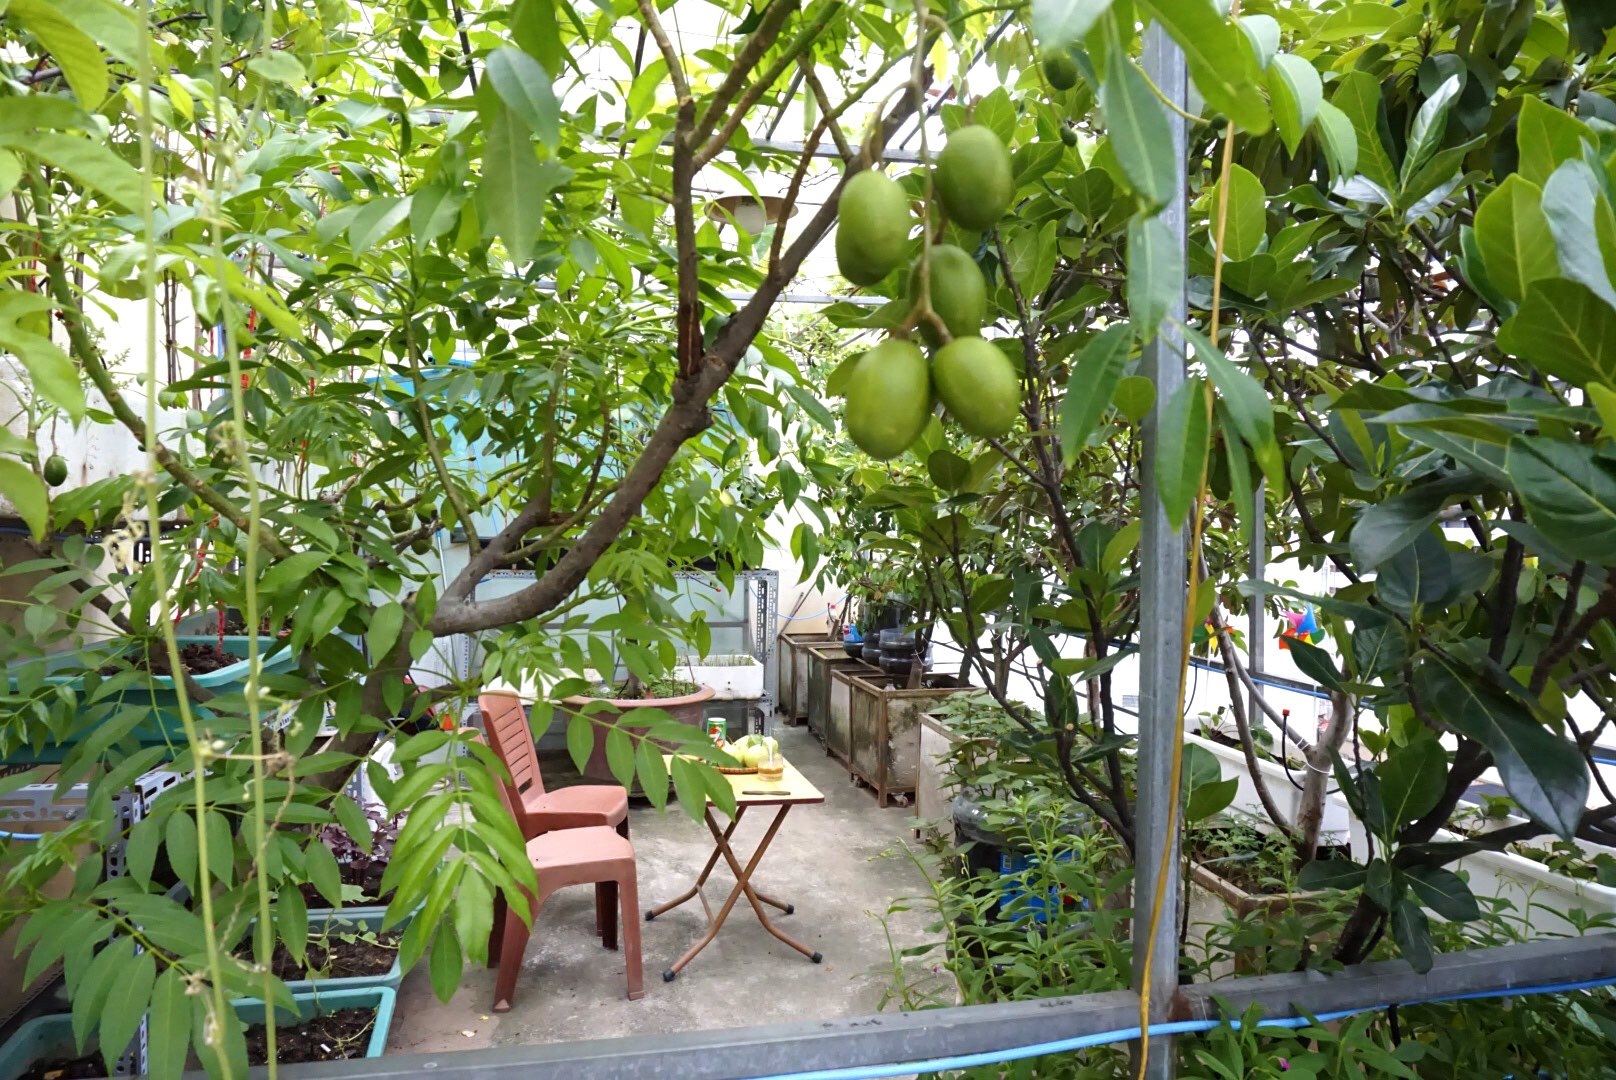 Vườn cây ăn quả trên sân thượng xanh tốt quanh năm của ông bố đảm Hà Nội - 4